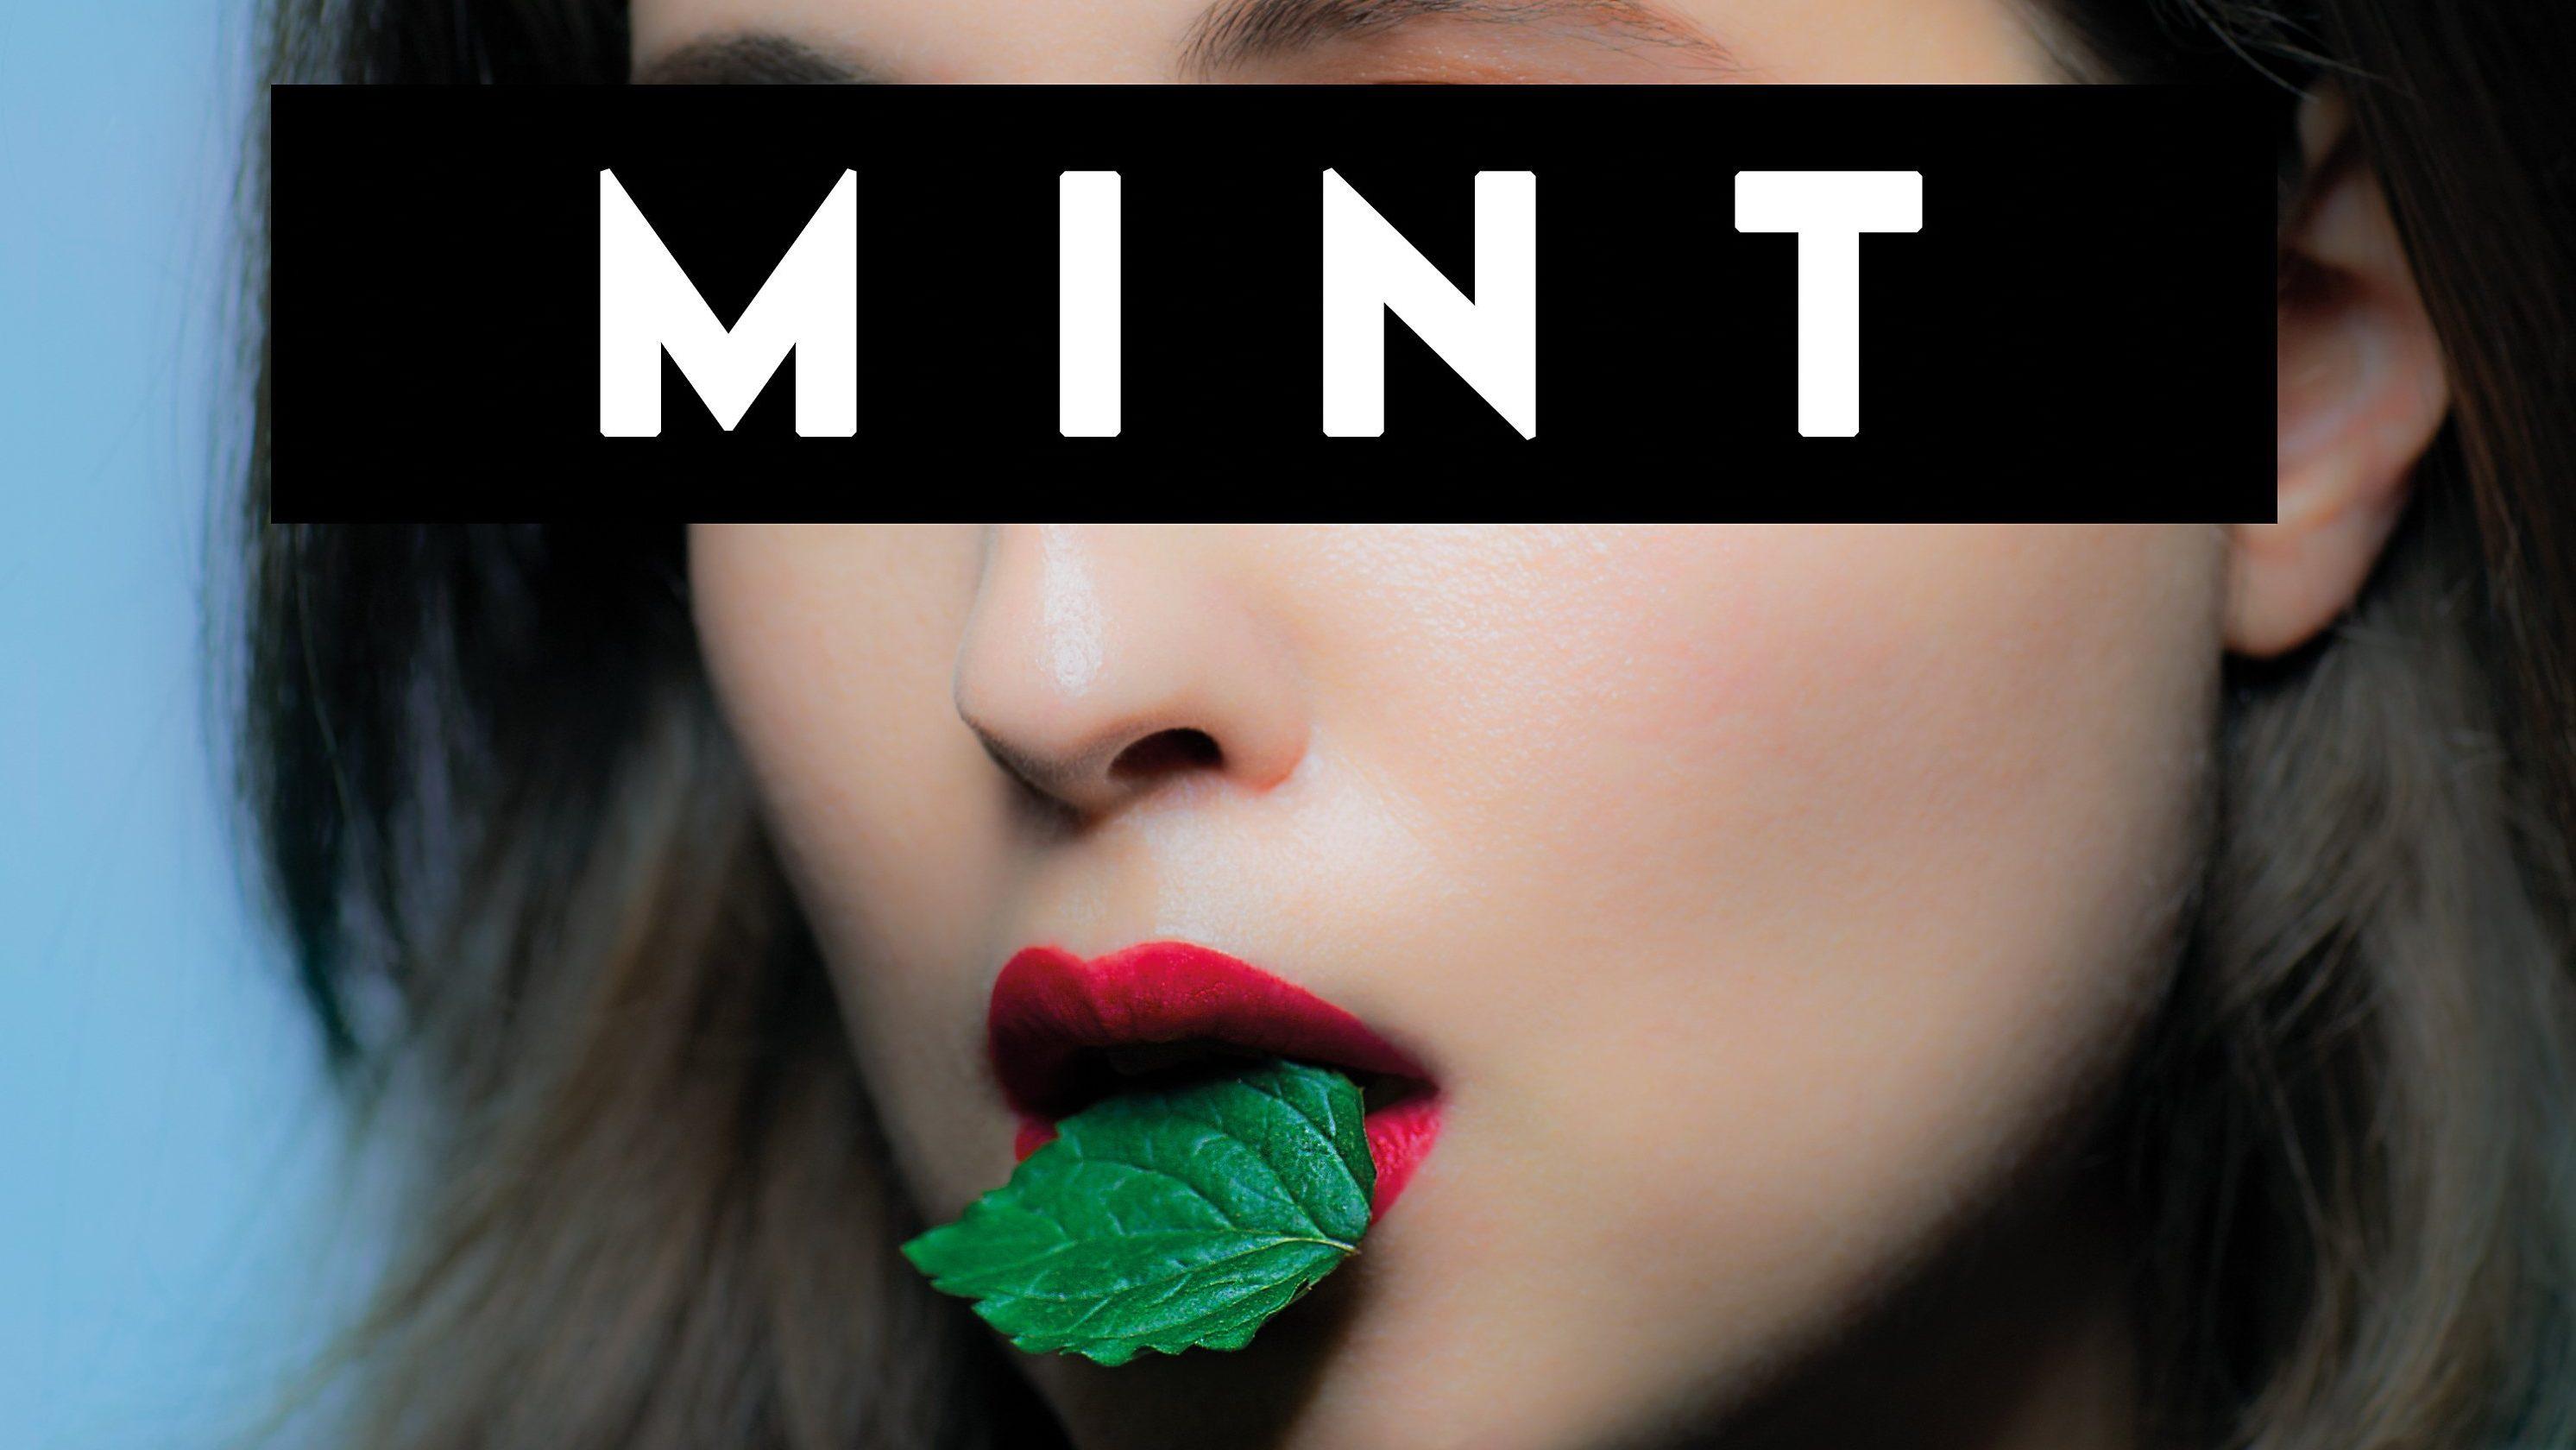 Review: Alice Merton album “Mint” leaves a bad taste